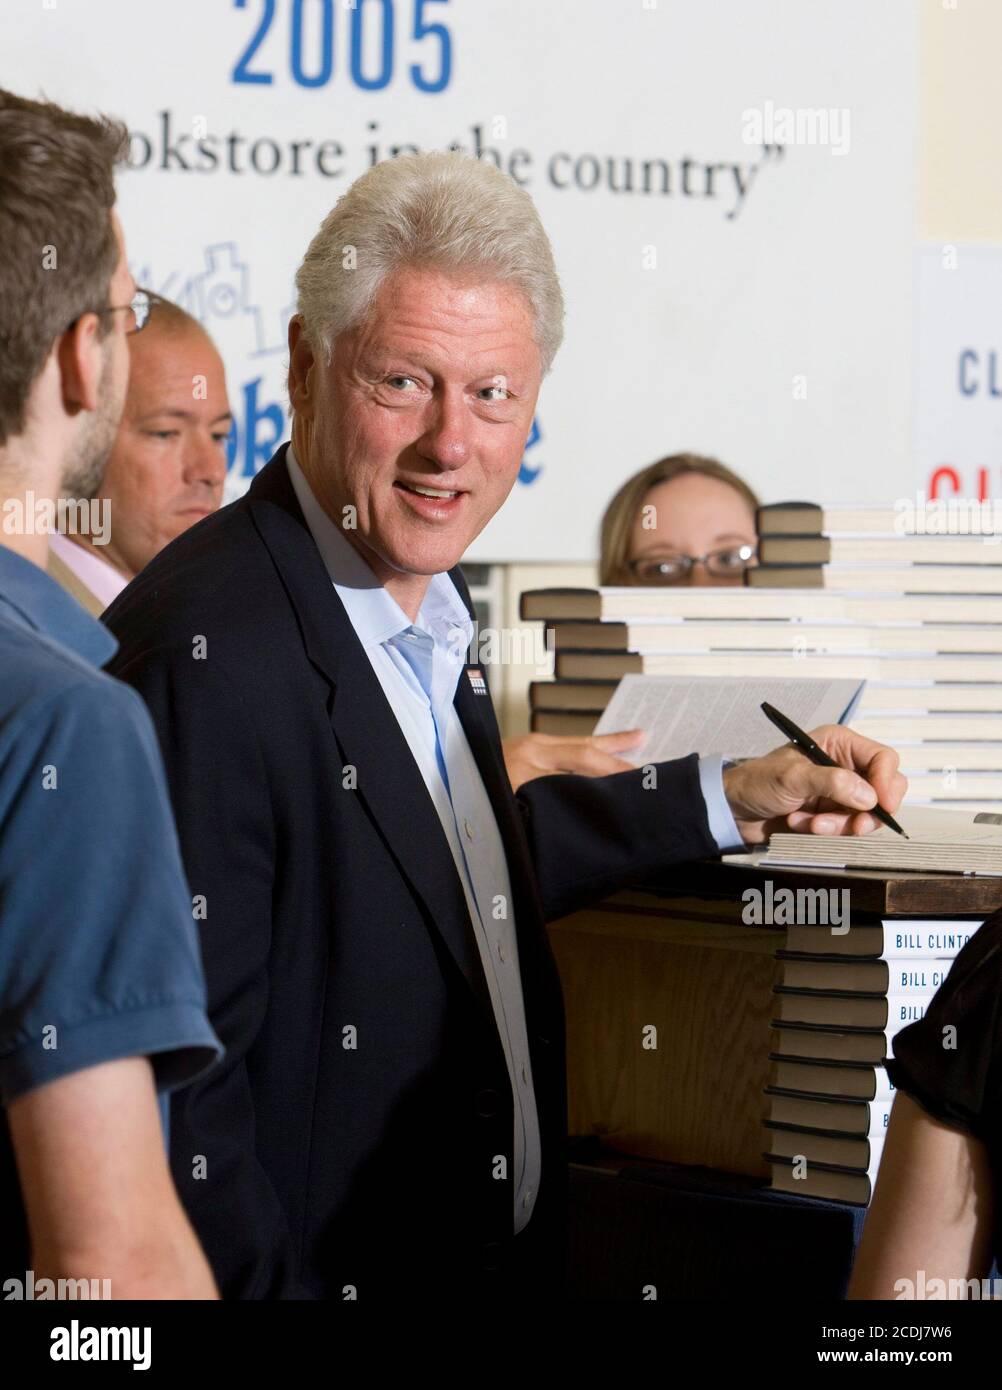 Austin, TX 14 de septiembre de 2007: El ex presidente de Estados Unidos Bill Clinton firma copias de su nuevo libro, 'Giving', en una librería local durante un giro de recaudación de fondos para la candidatura presidencial de la esposa Hillary Clinton. ©Bob Daemmrich Foto de stock